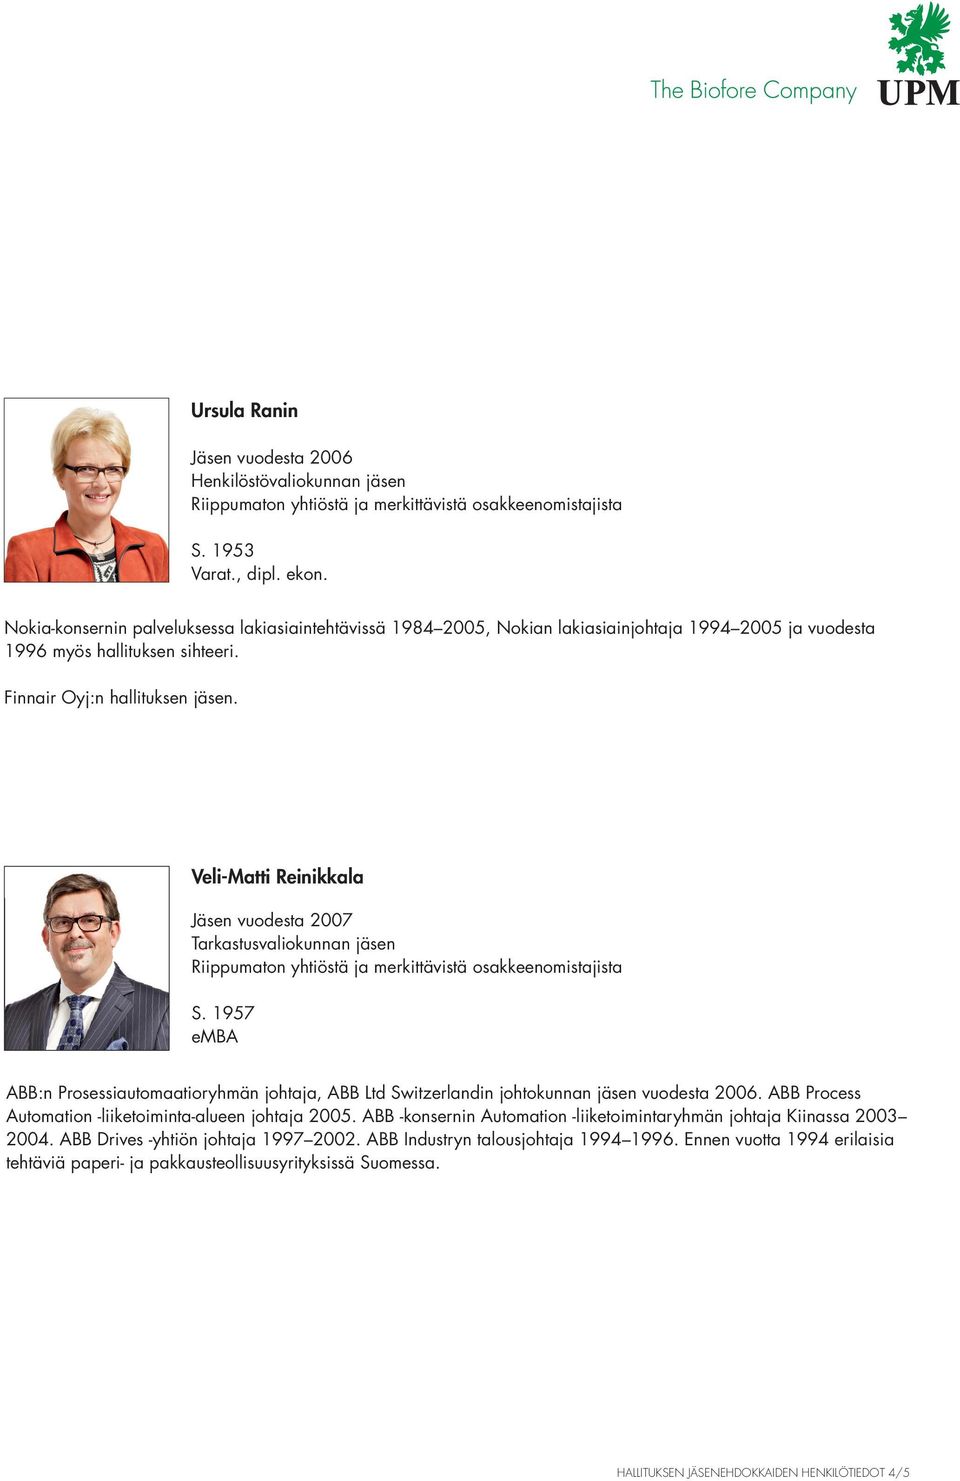 Veli-Matti Reinikkala Jäsen vuodesta 2007 Tarkastusvaliokunnan jäsen S. 1957 emba ABB:n Prosessiautomaatioryhmän johtaja, ABB Ltd Switzerlandin johtokunnan jäsen vuodesta 2006.